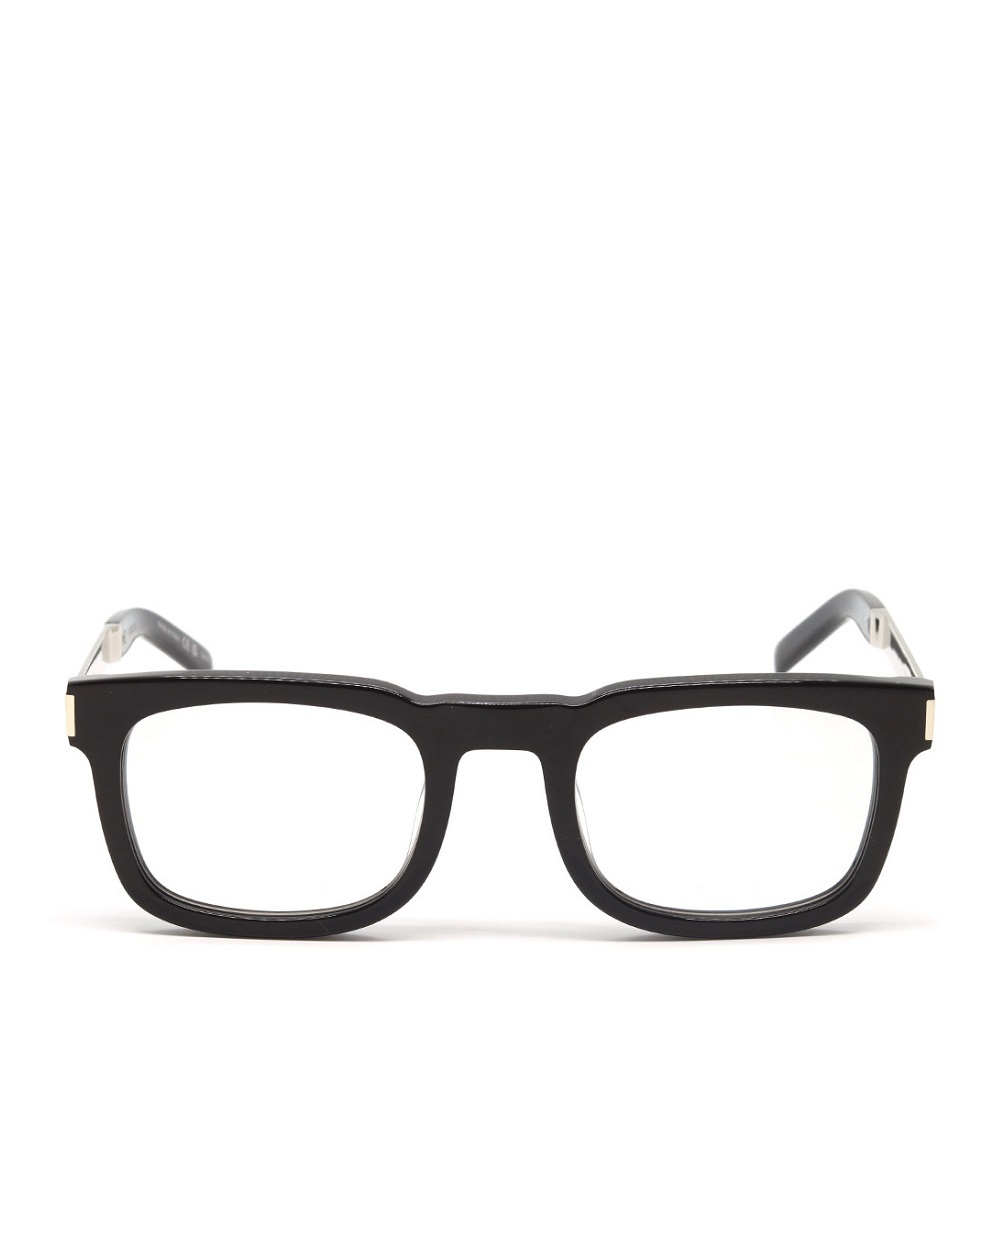 Солнцезащитные очки Saint Laurent SL 581-003, черный цвет • Купить в интернет-магазине Kameron